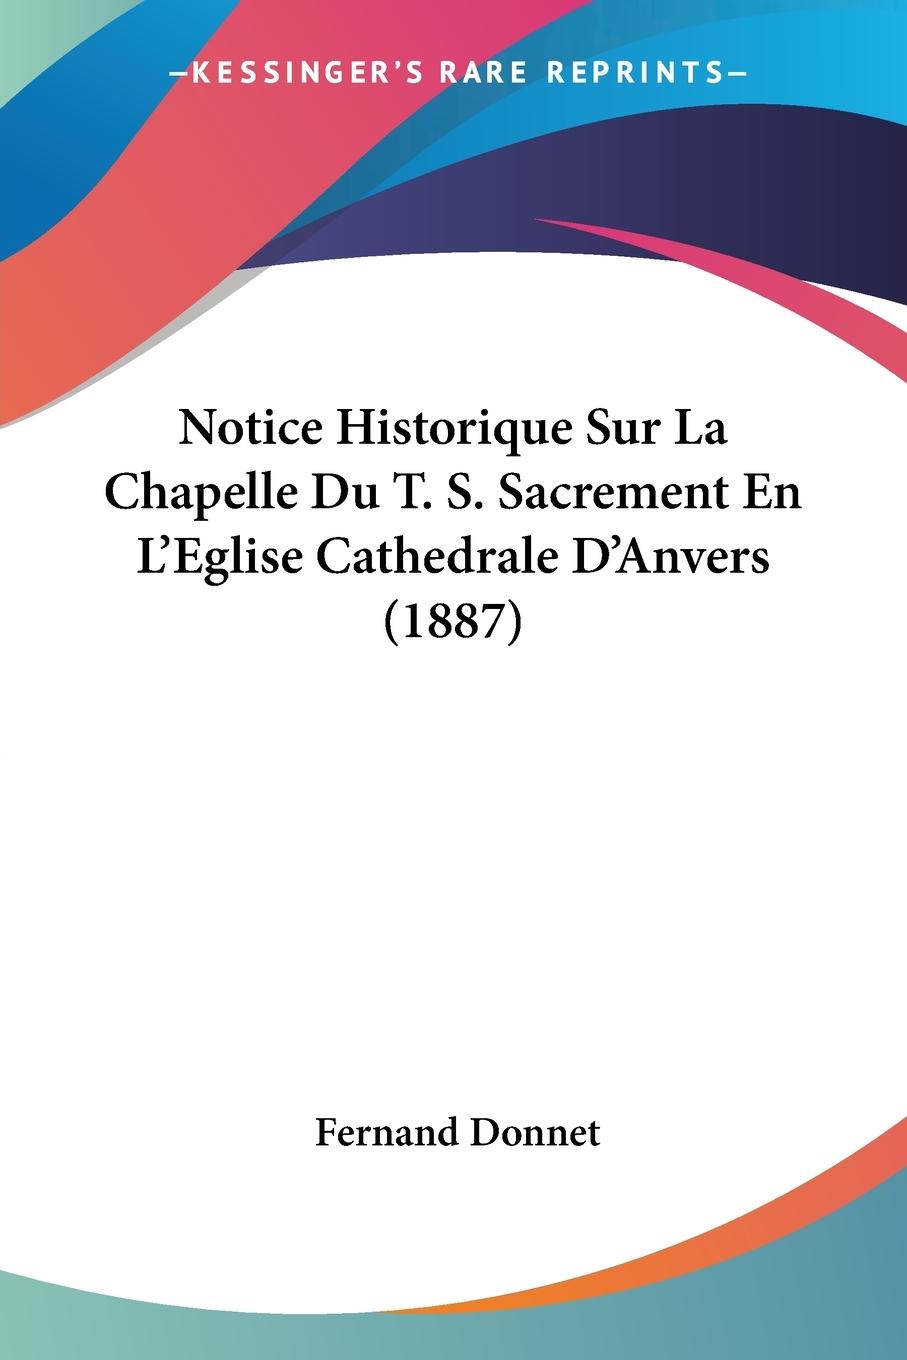 Notice Historique Sur La Chapelle Du T. S. Sacrement En L Eglise Cathedrale D Anvers (1887) - Donnet, Fernand